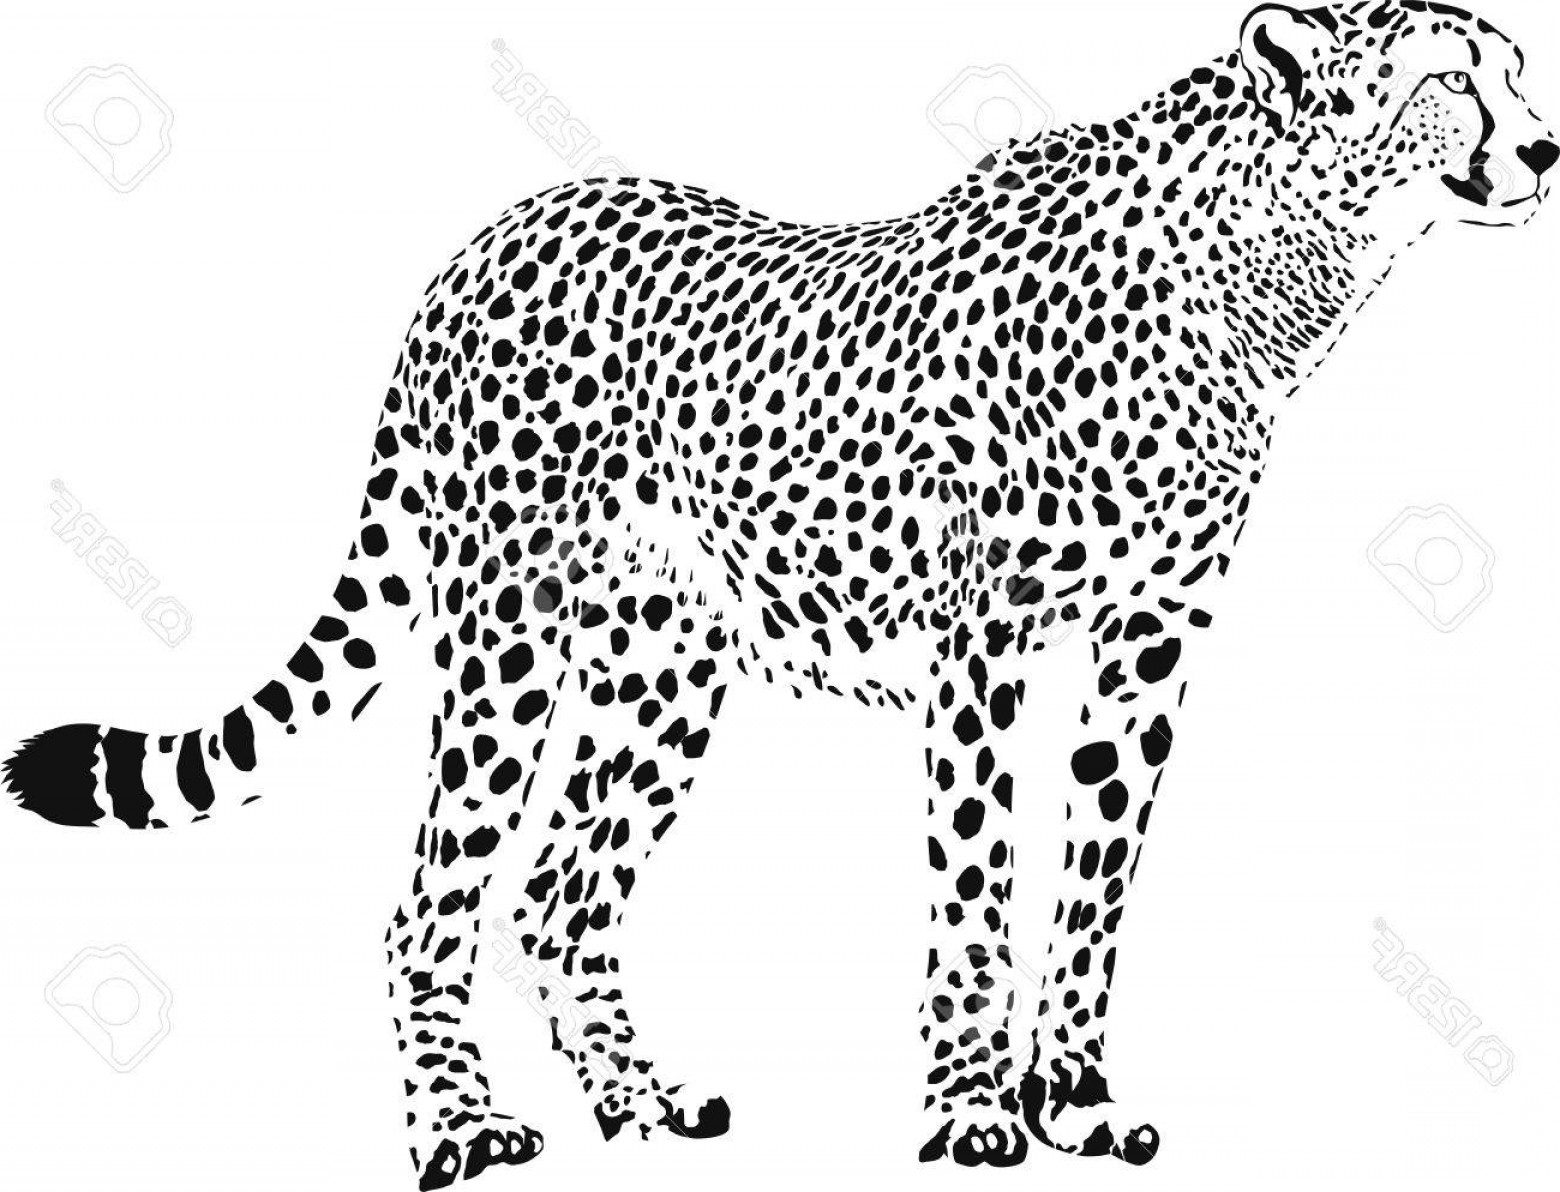 Cheetah Vector at Vectorified.com | Collection of Cheetah Vector free